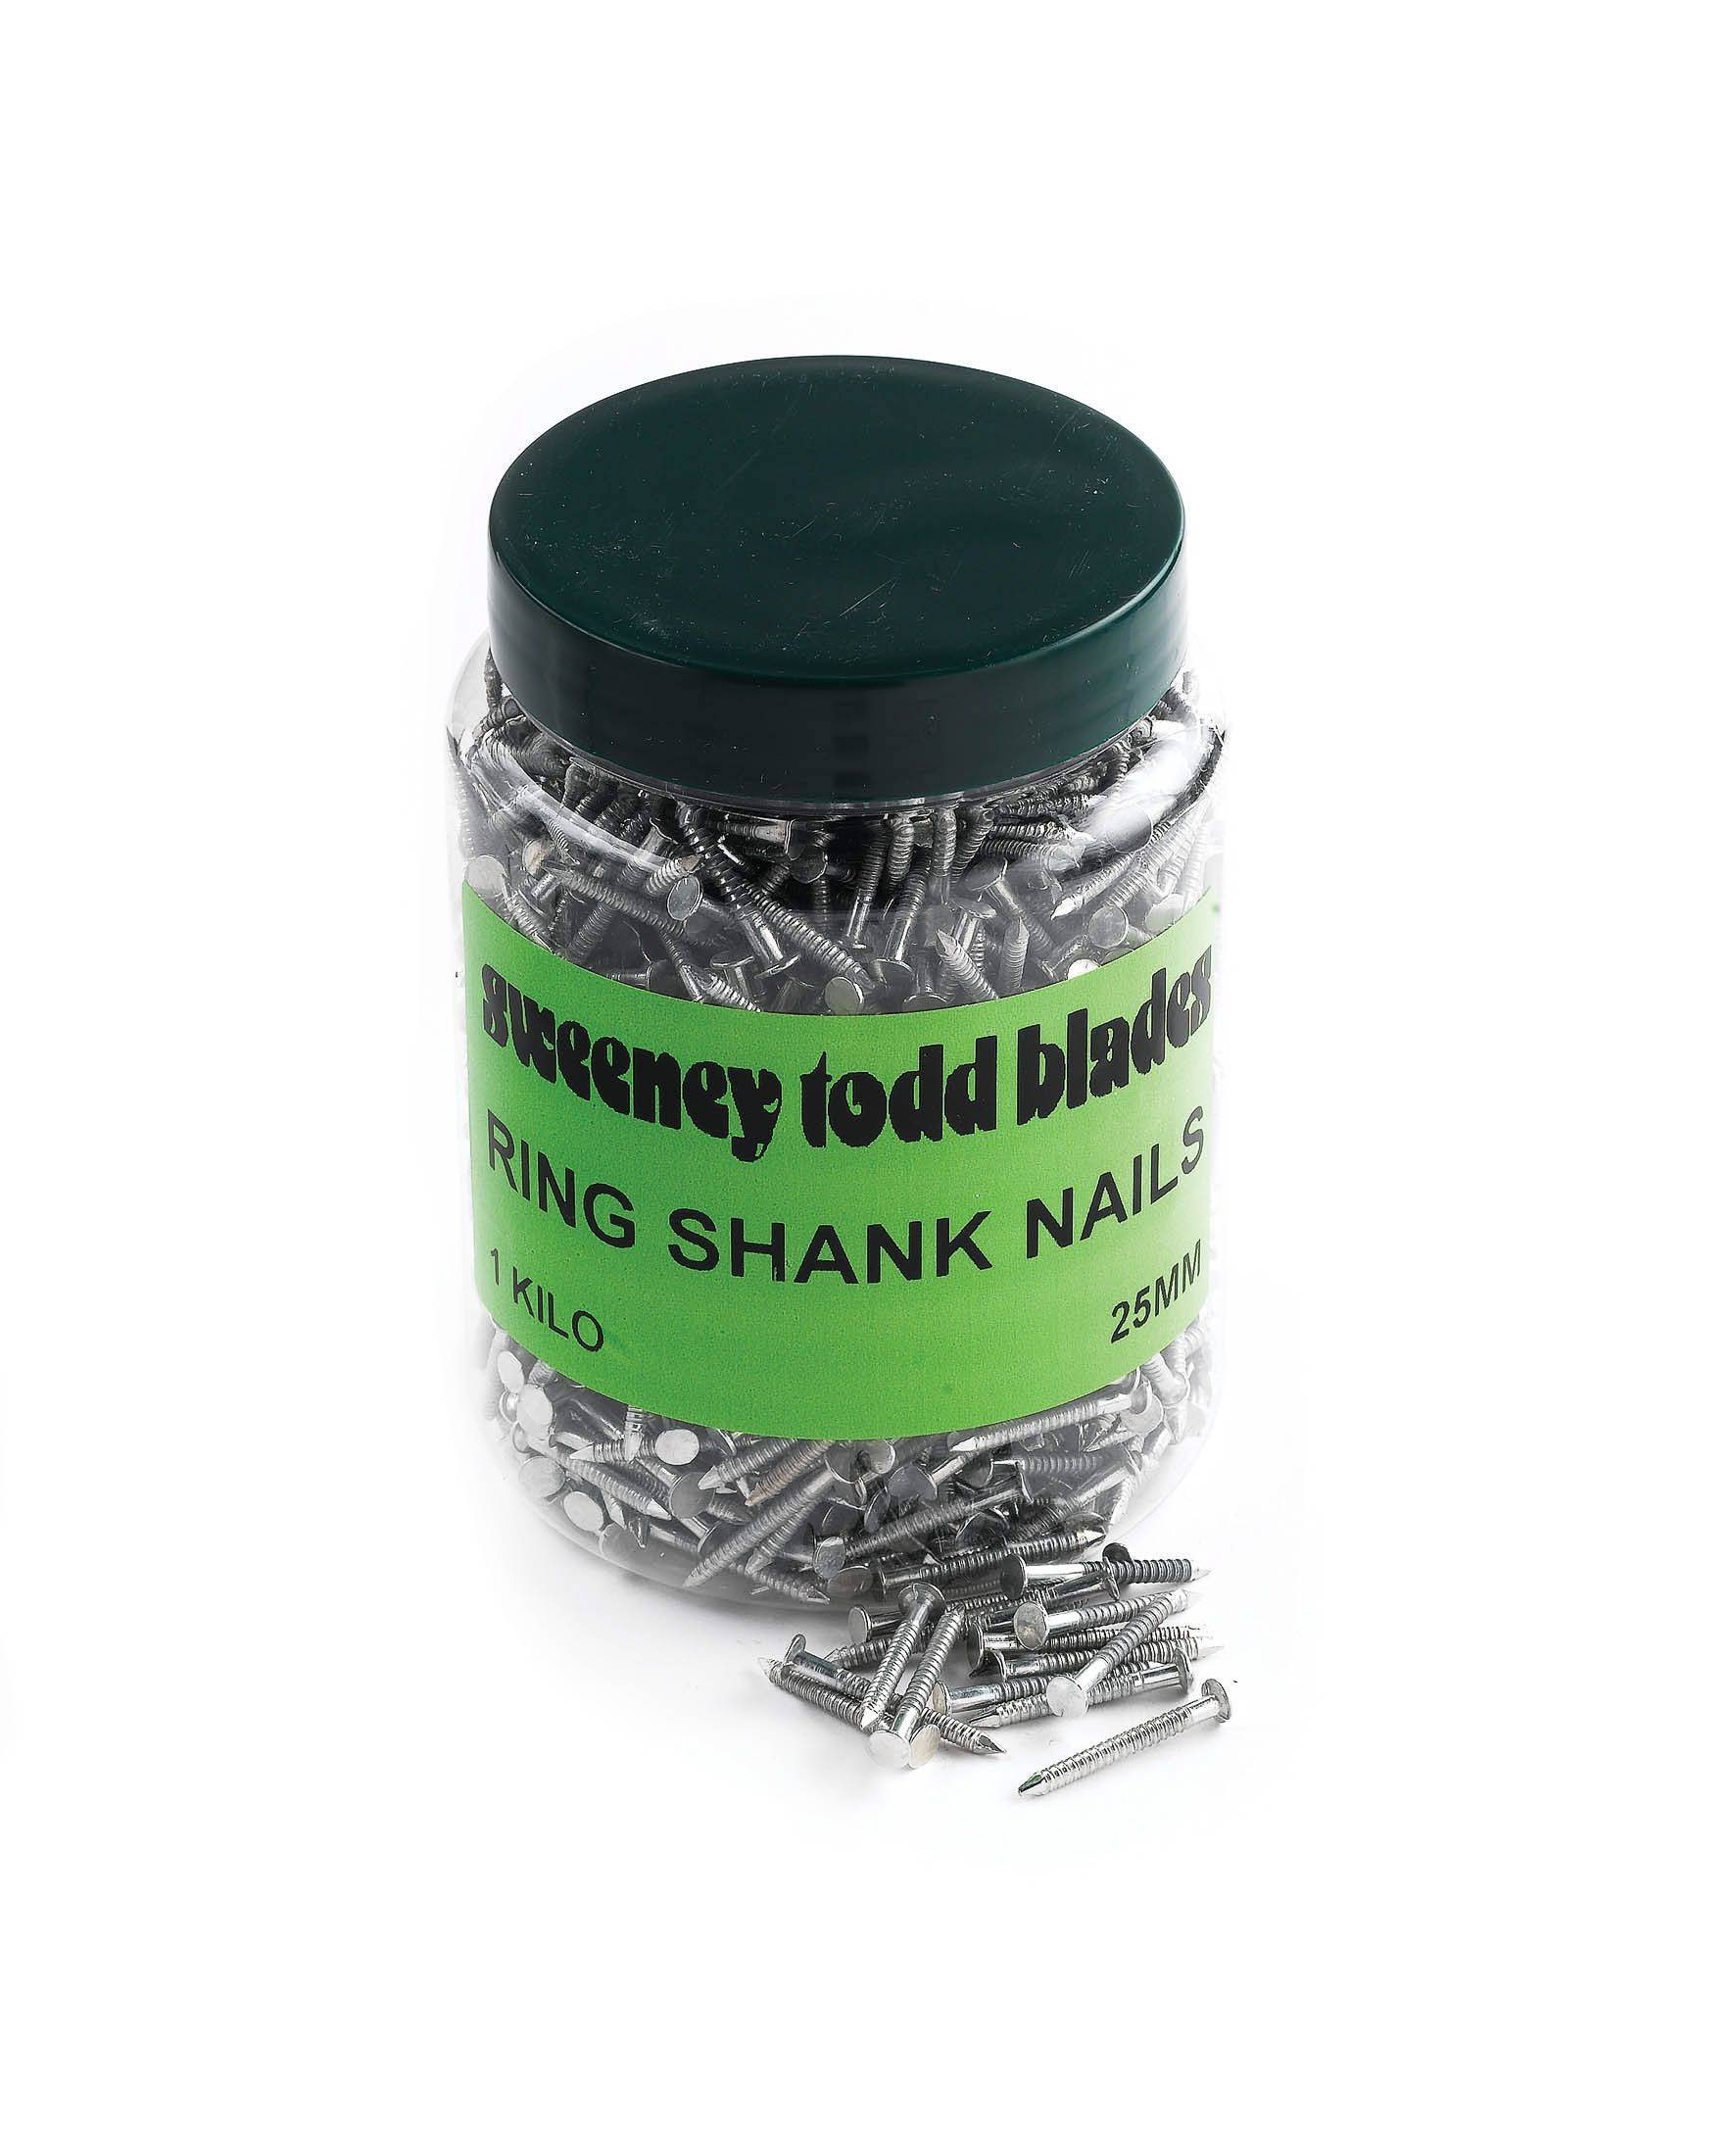 Ring Shank Nails 25mm 1kg Tub Cat No 10098